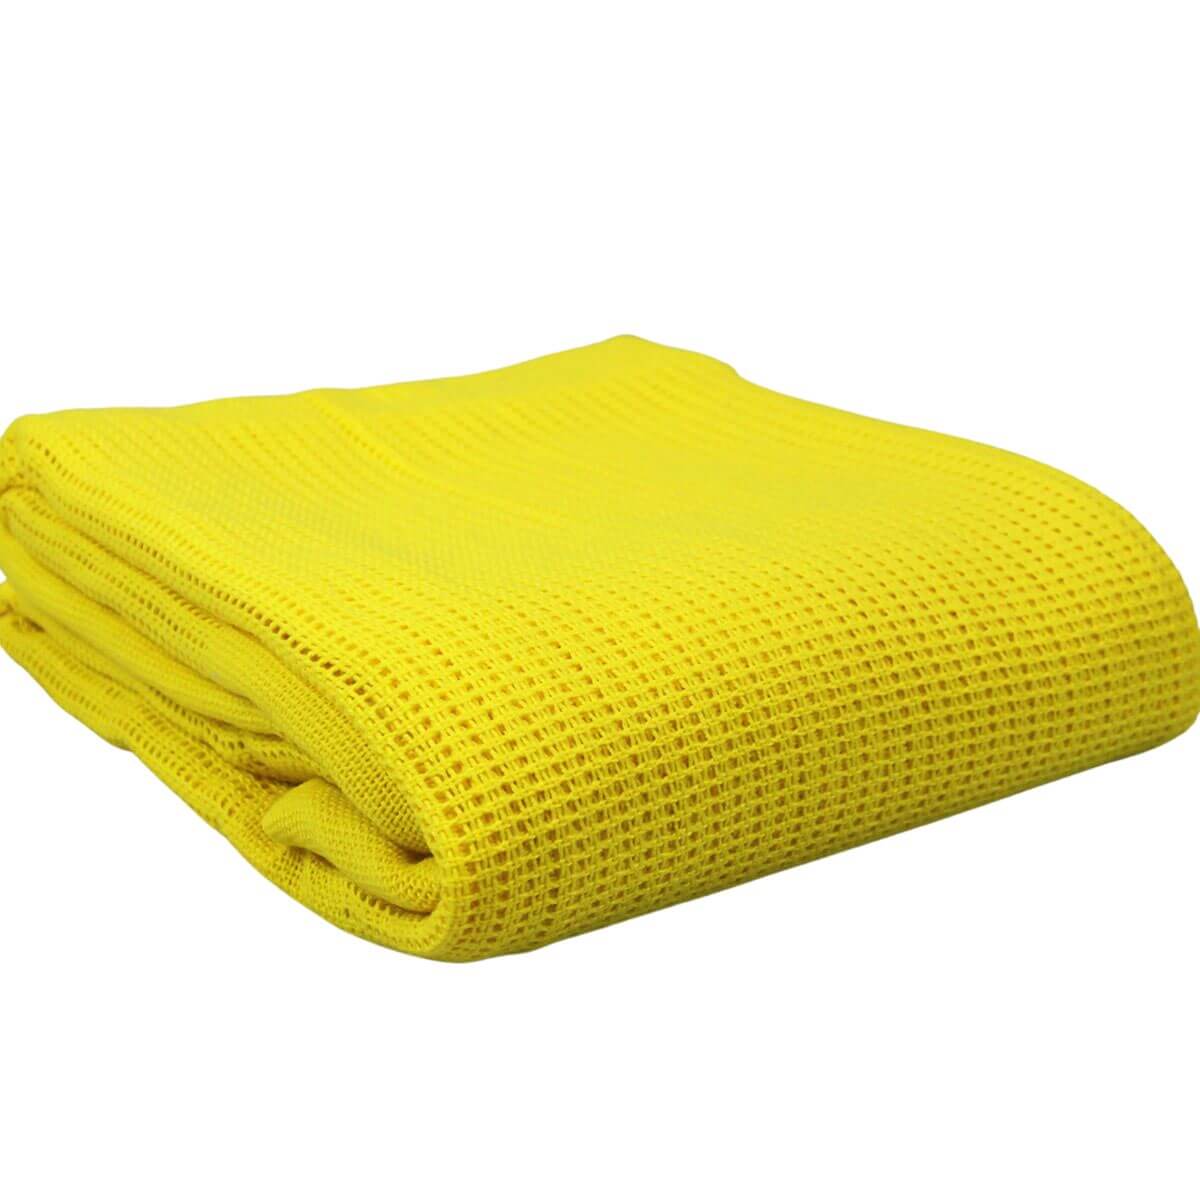 Polyester cellular falls risk single bed blanket